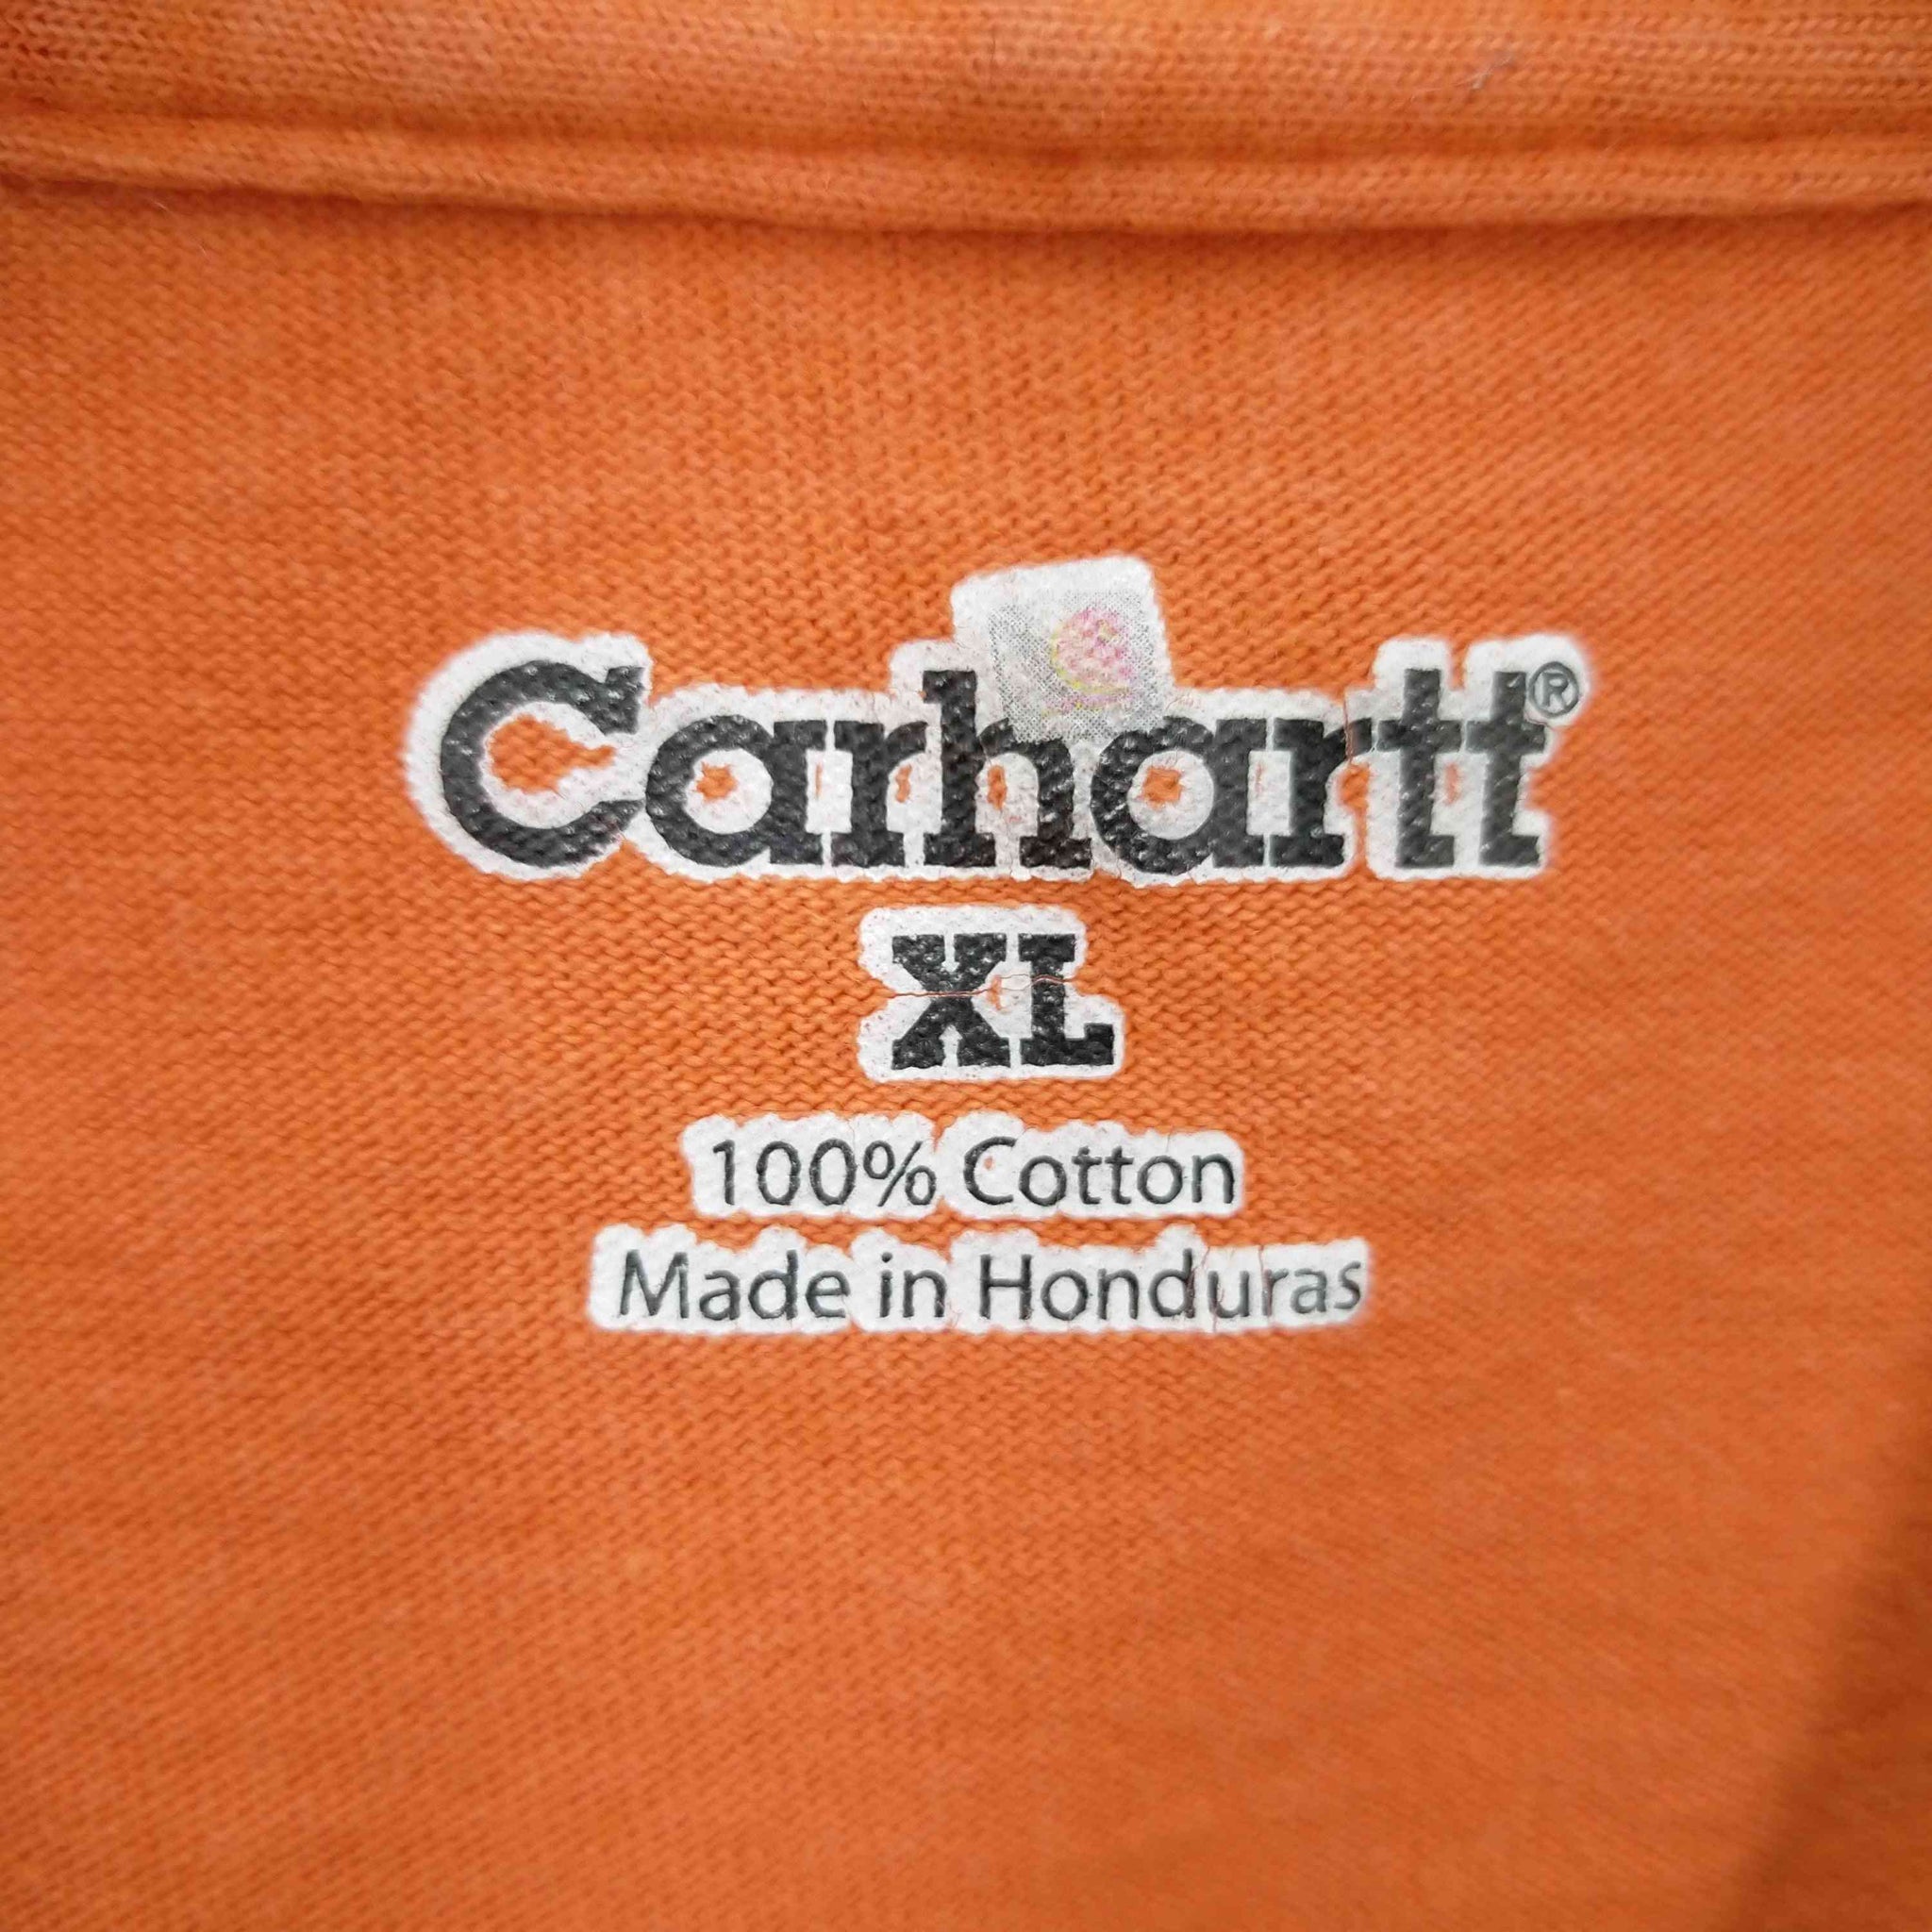 Carhartt(カーハート)ワンポイントTシャツ